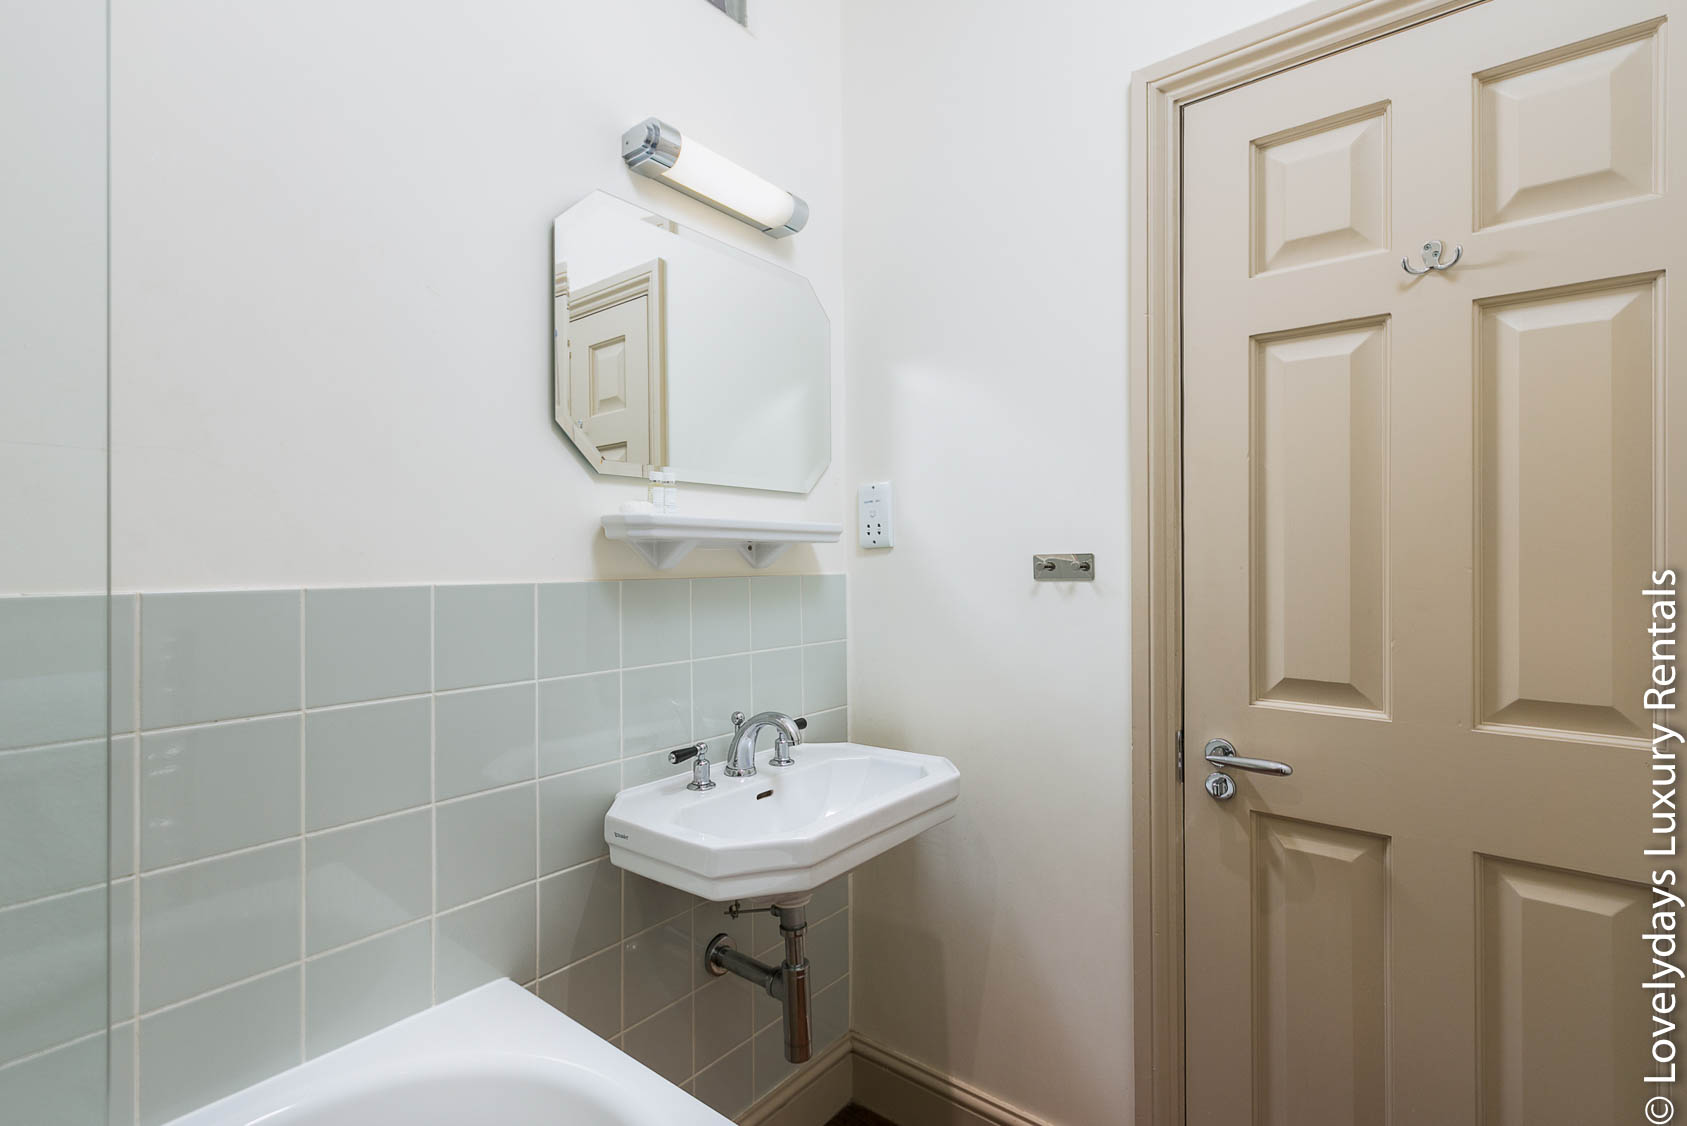 Lovelydays luxury service apartment rental - London - Covent Garden - Neal Street - Lovelysuite - 2 bedrooms - 1 bathrooms - Large bathtub - 028719421e05 - Lovelydays